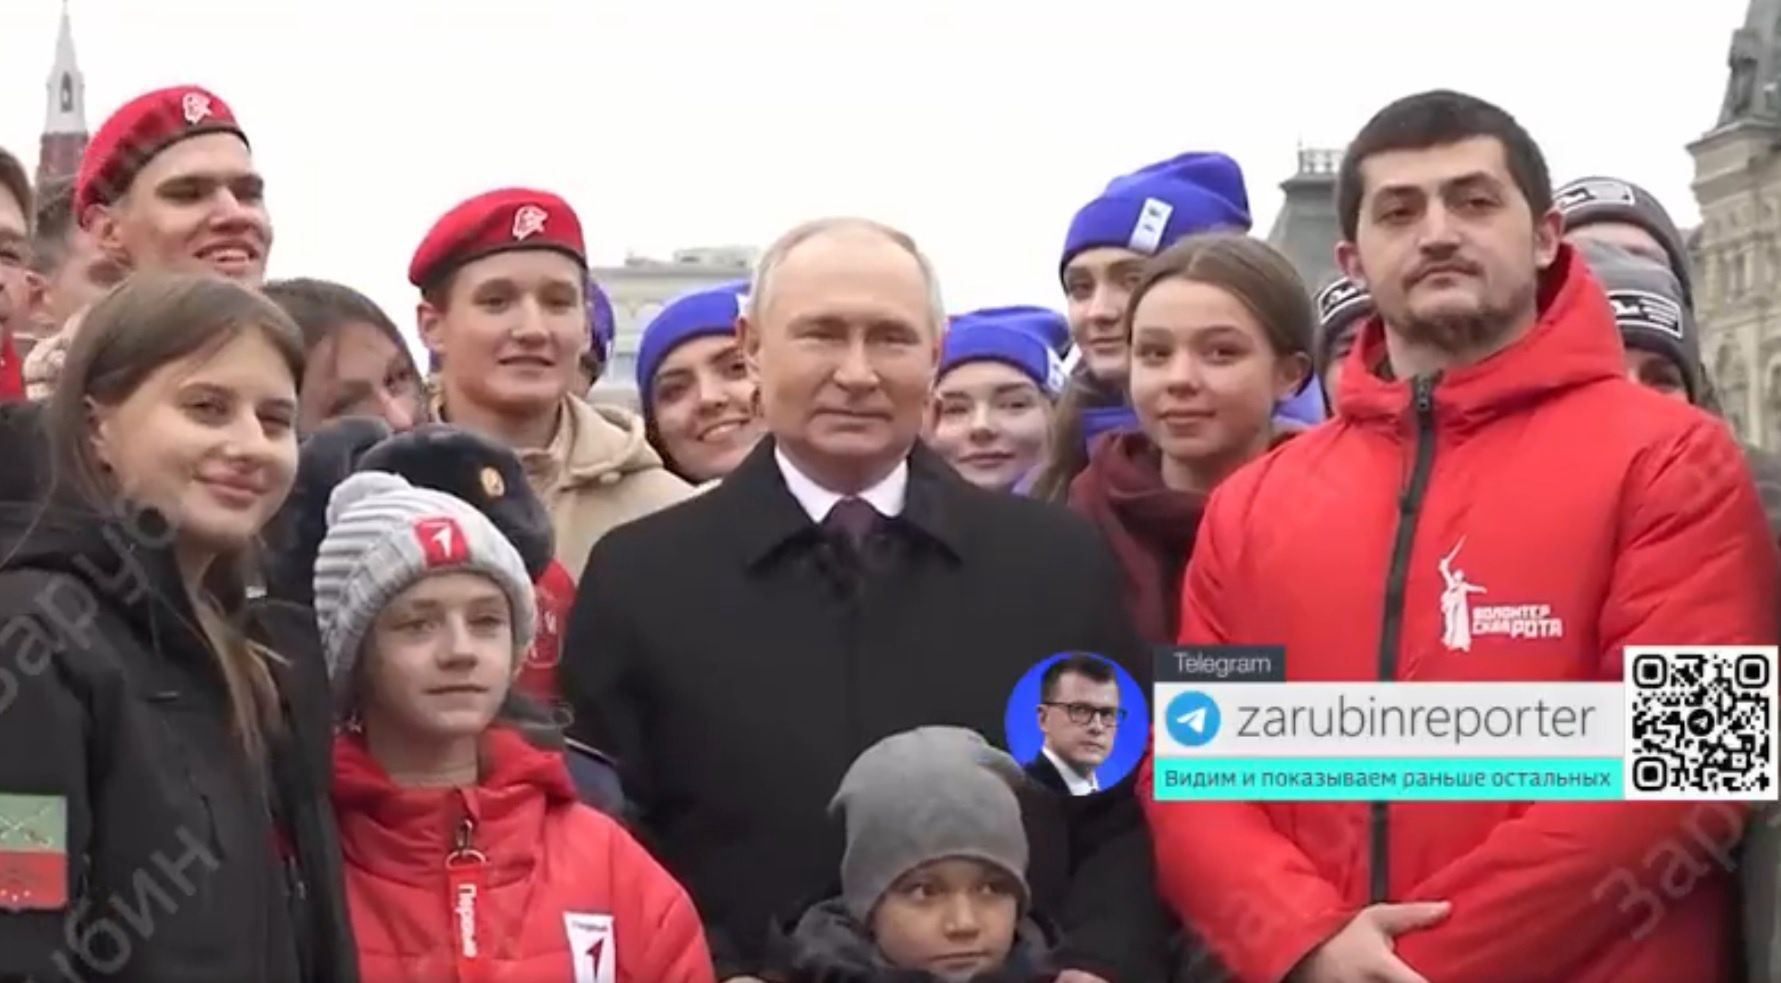 Sobowtór Putina się wygadał? Nagranie niesie się po sieci